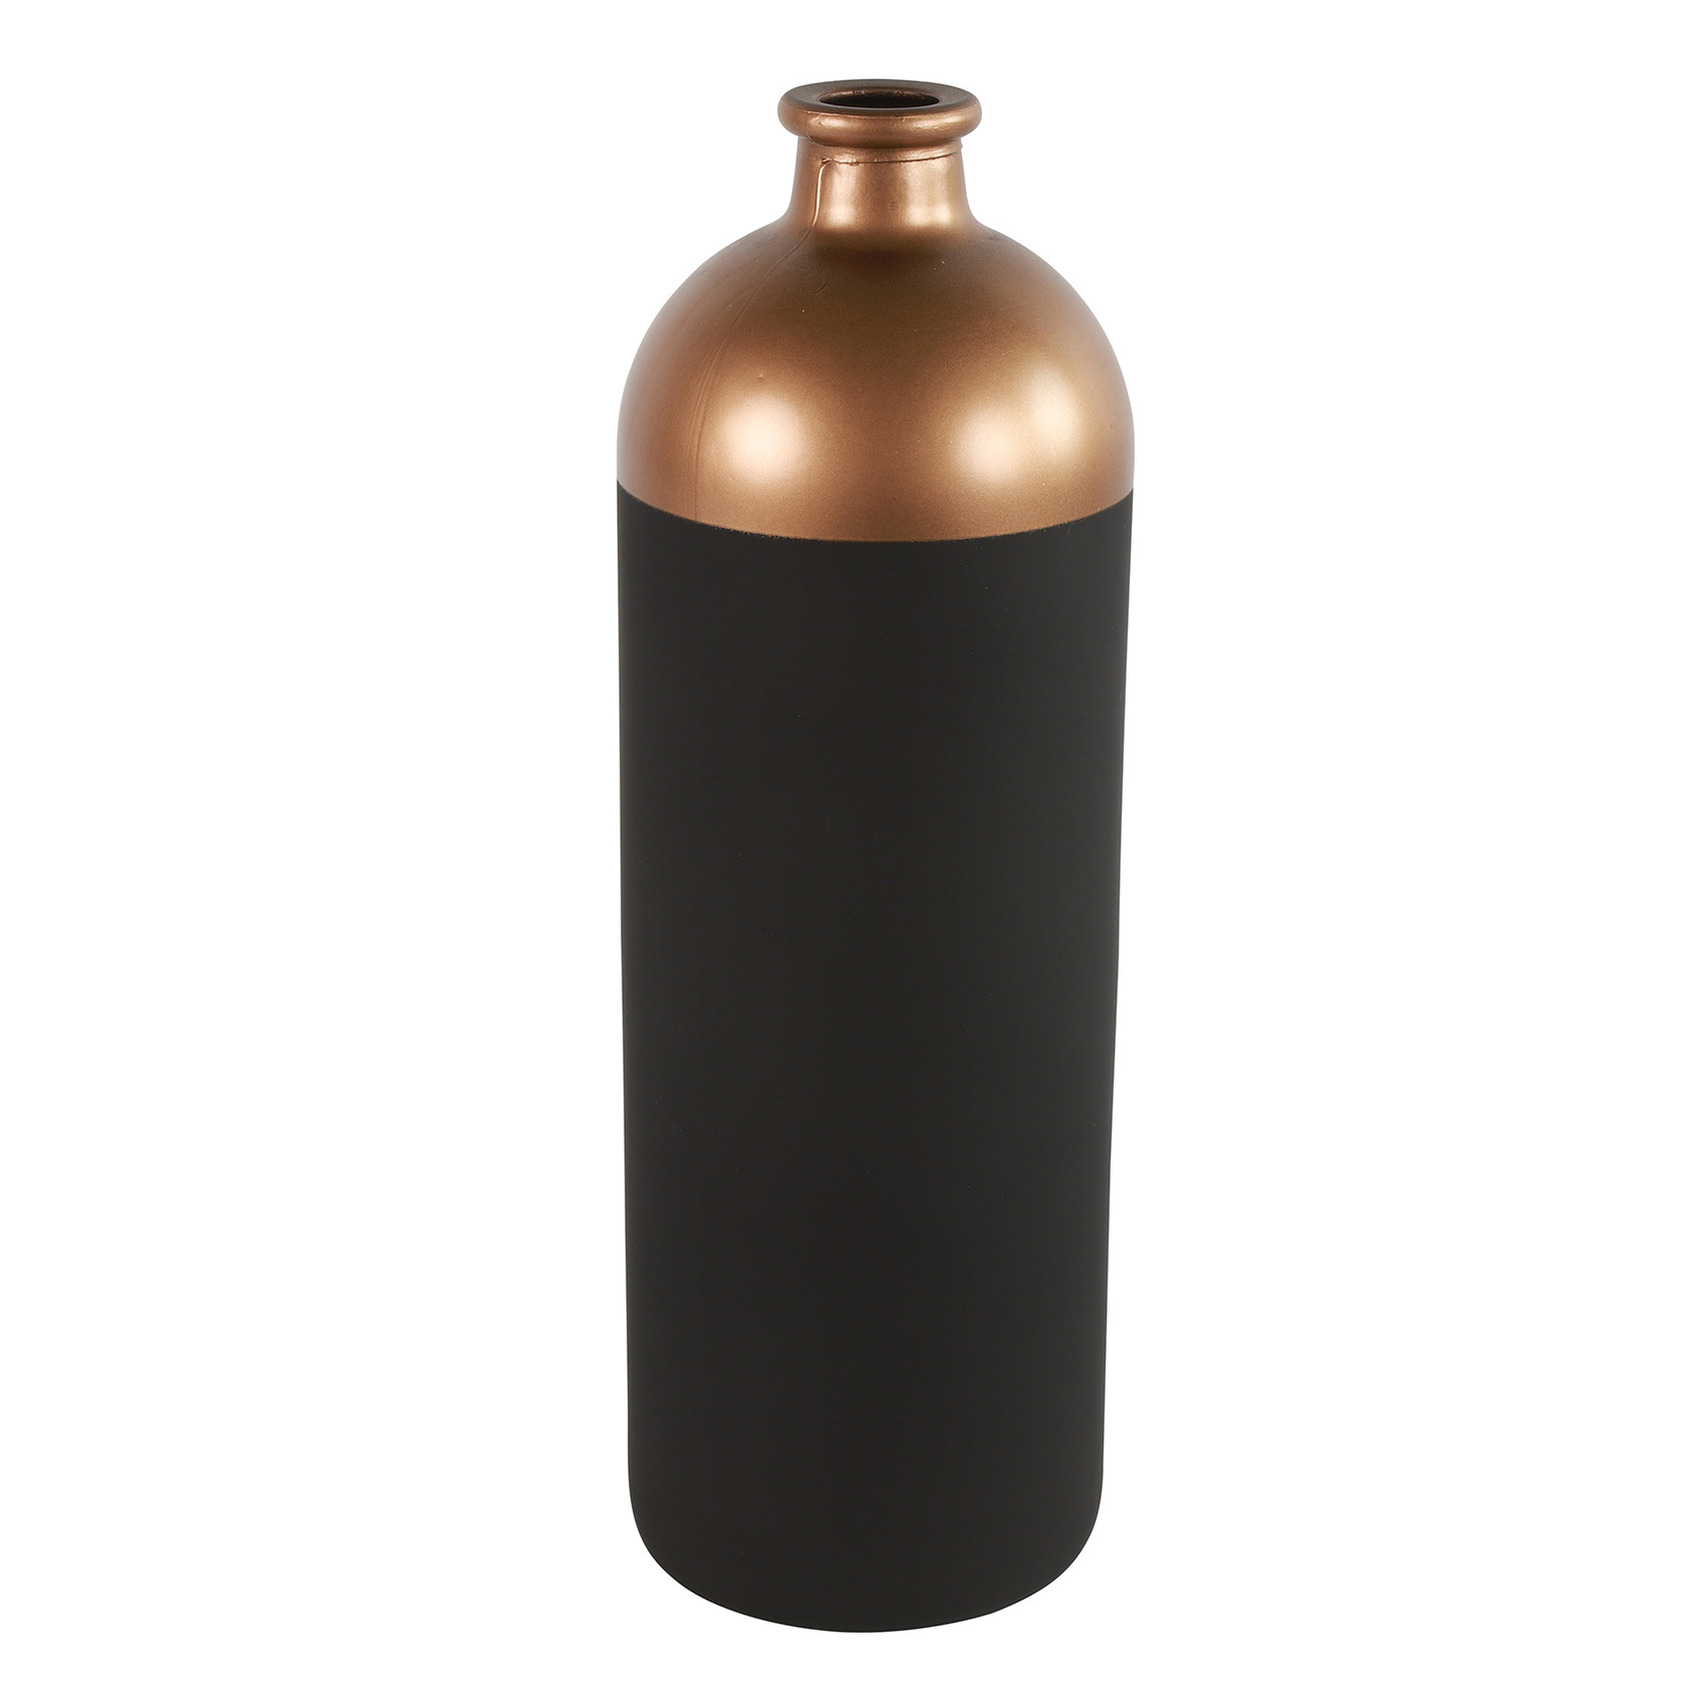 Countryfield Bloemen-deco vaas zwart-koper glas fles D13 x H41 cm